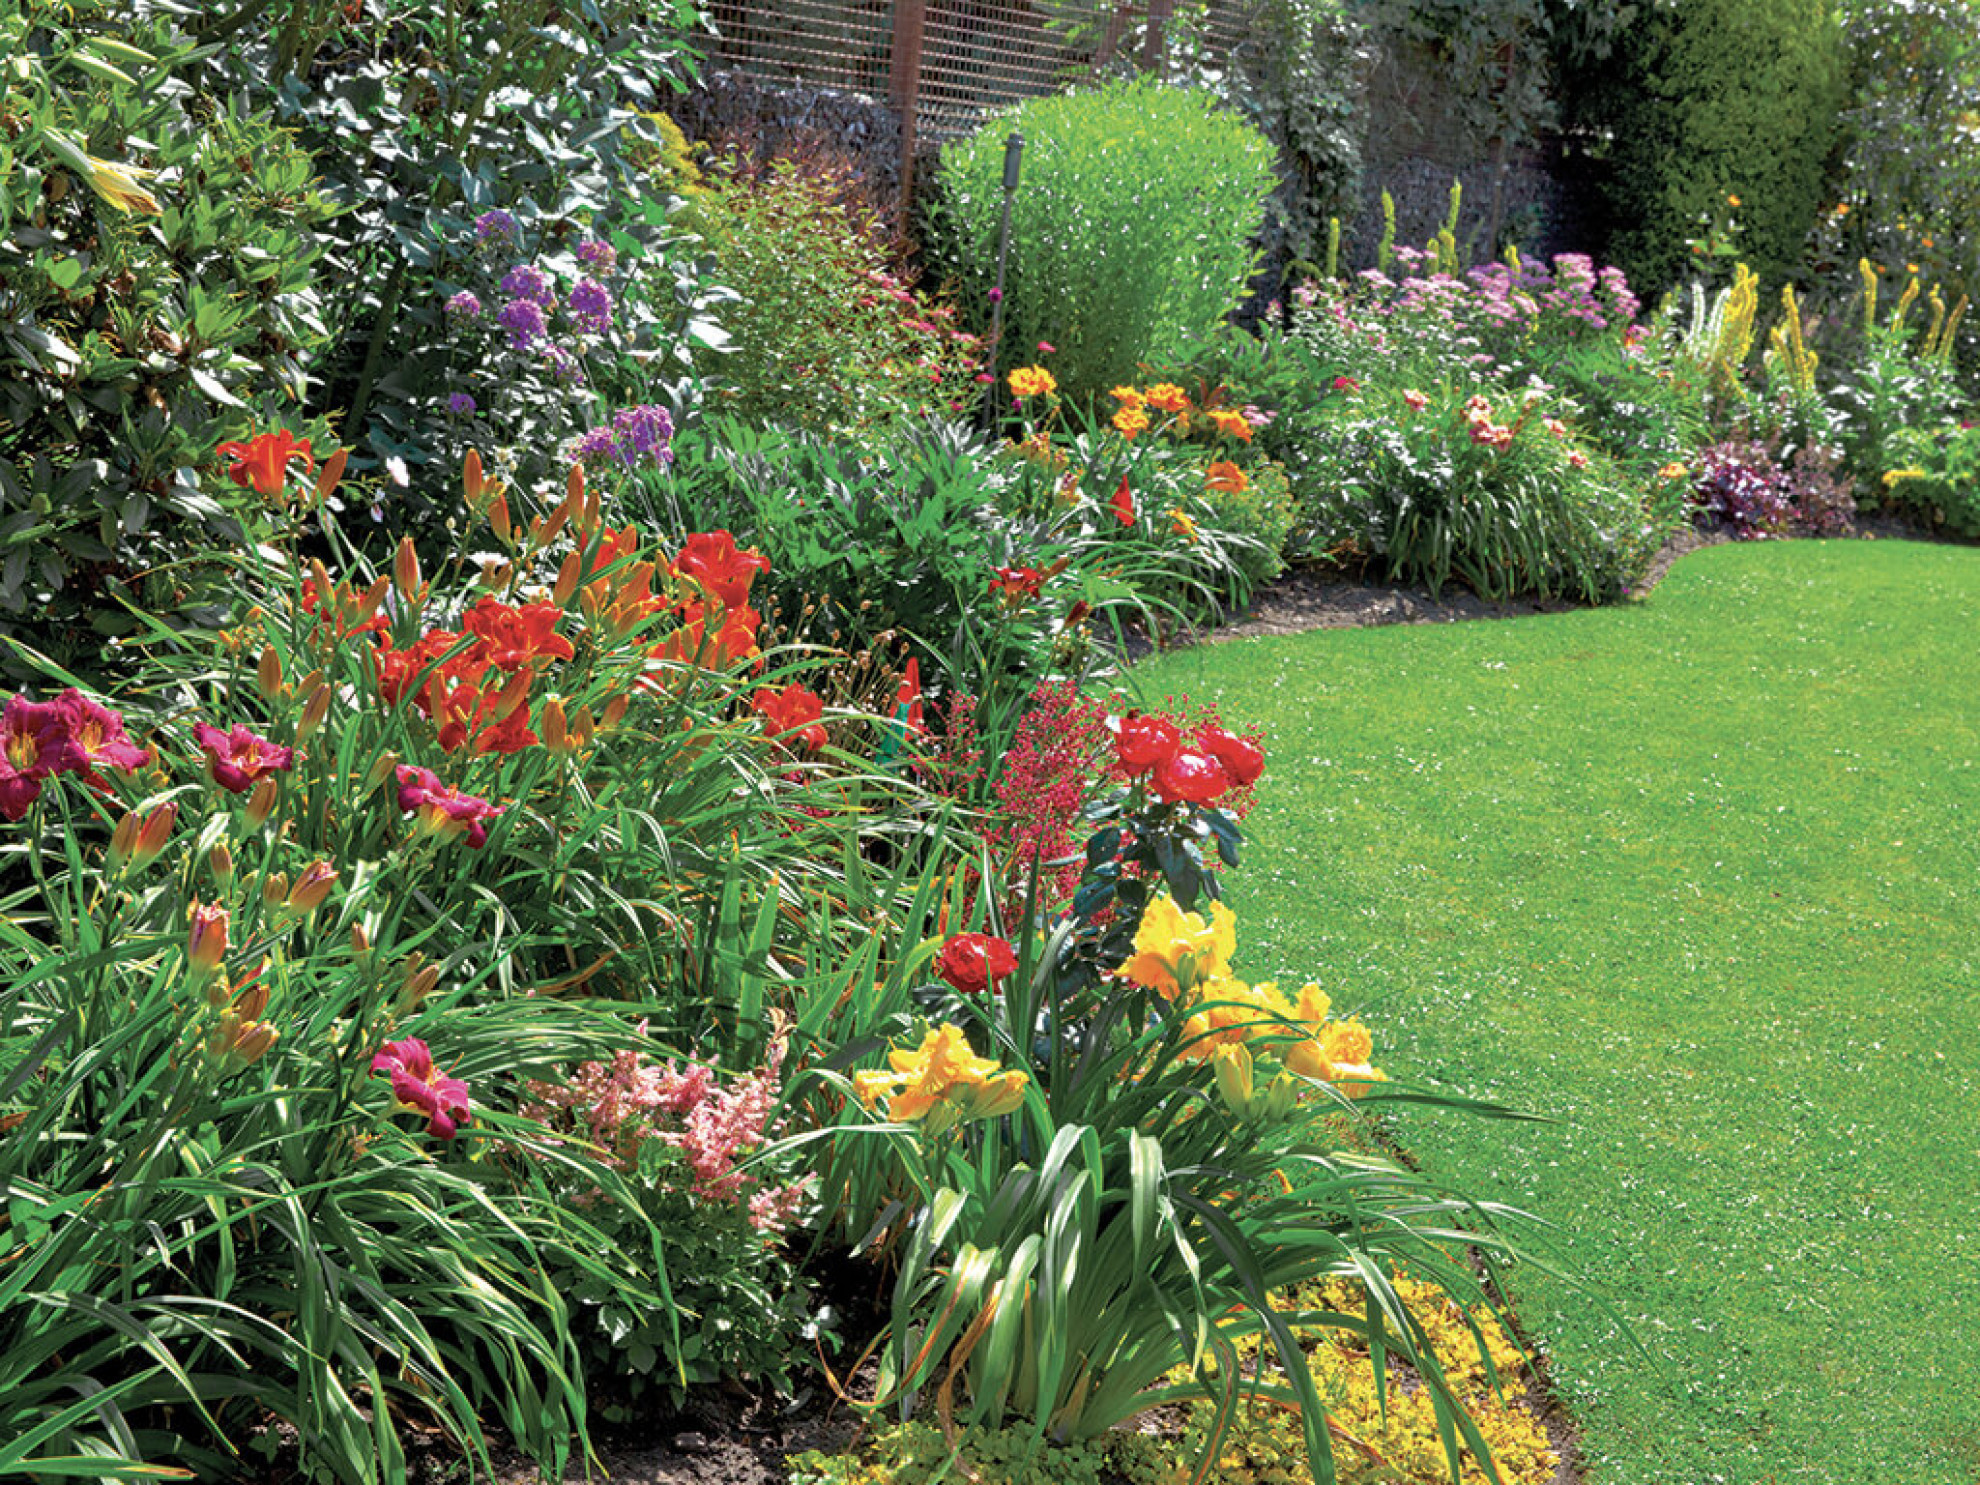 Come pacciamare il giardino: manutenzione in estate - Cose di Casa